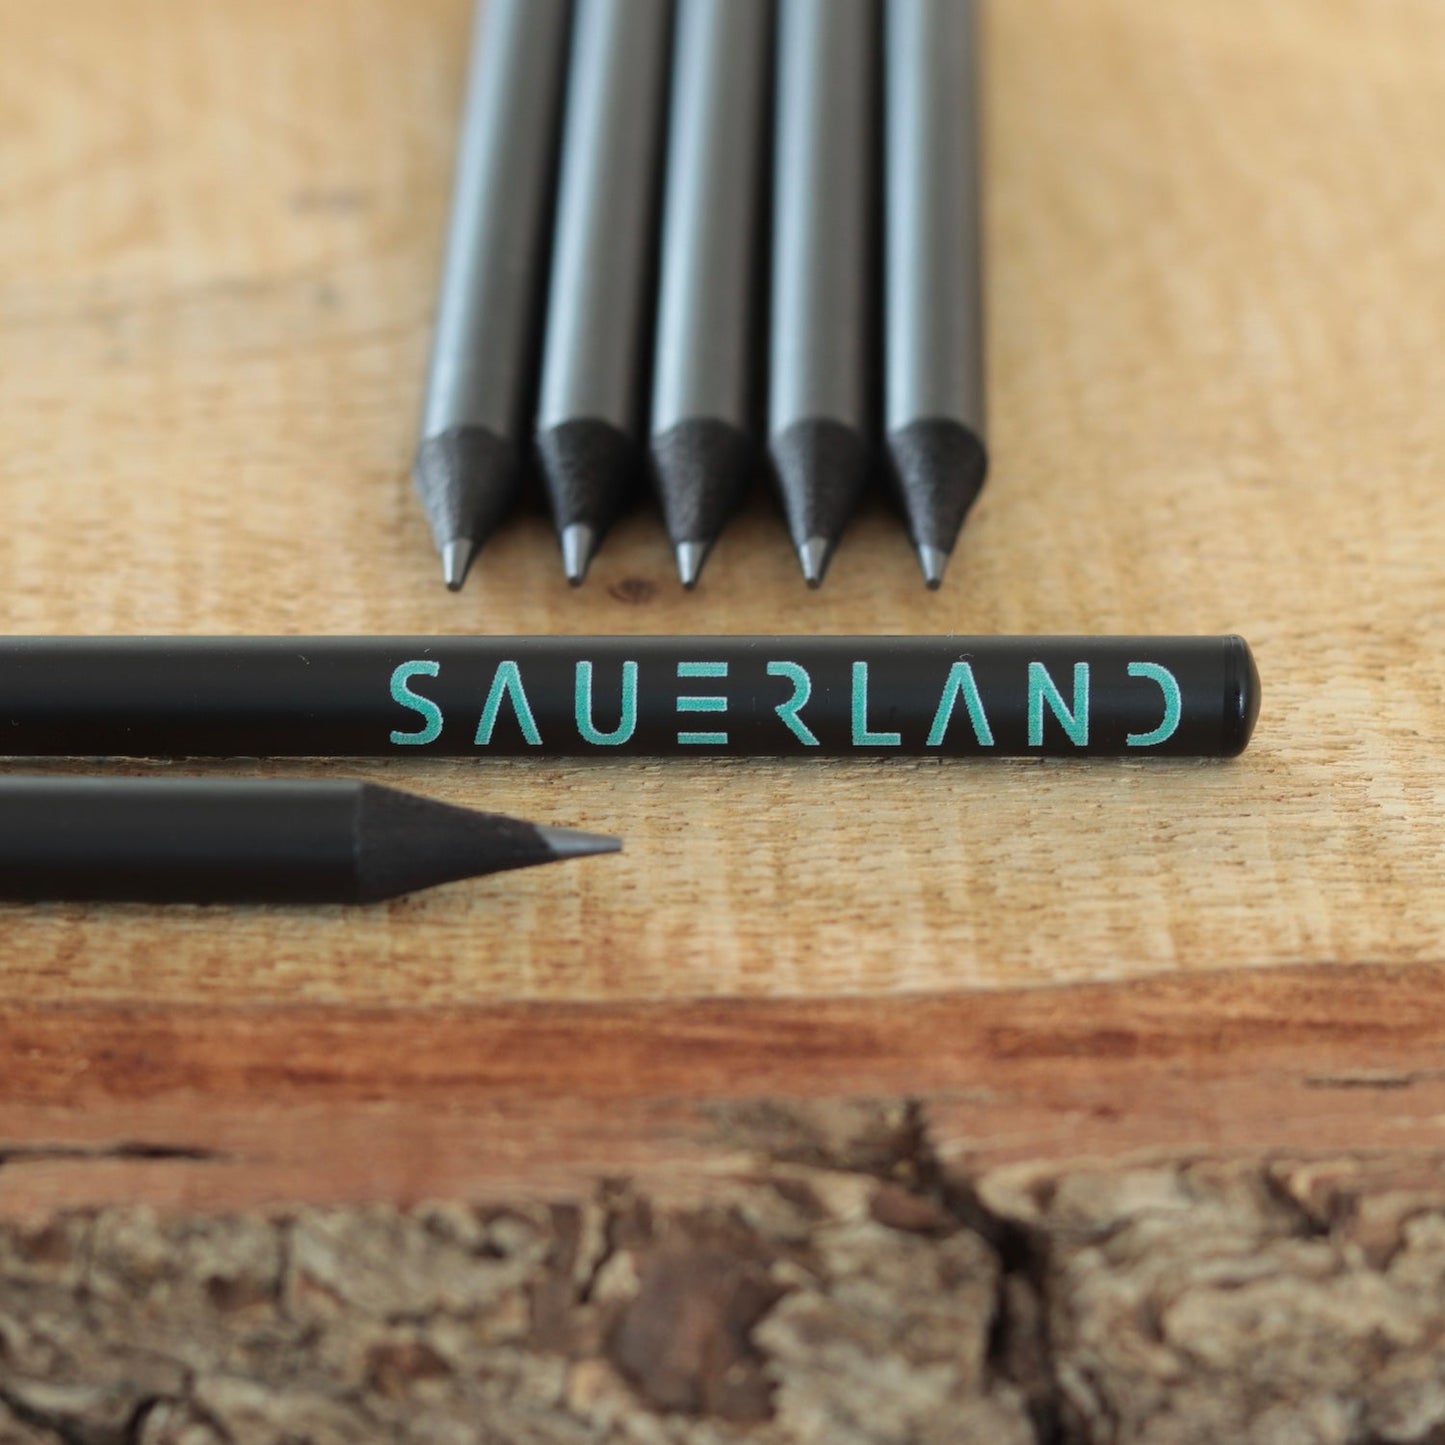 Schwarze Sauerland Bleistifte mit dem New Sauerland Schriftzug in türkis. Die Bleistifte sind matt-schwarz und haben eine schwarze Tauchkappe am Ende.